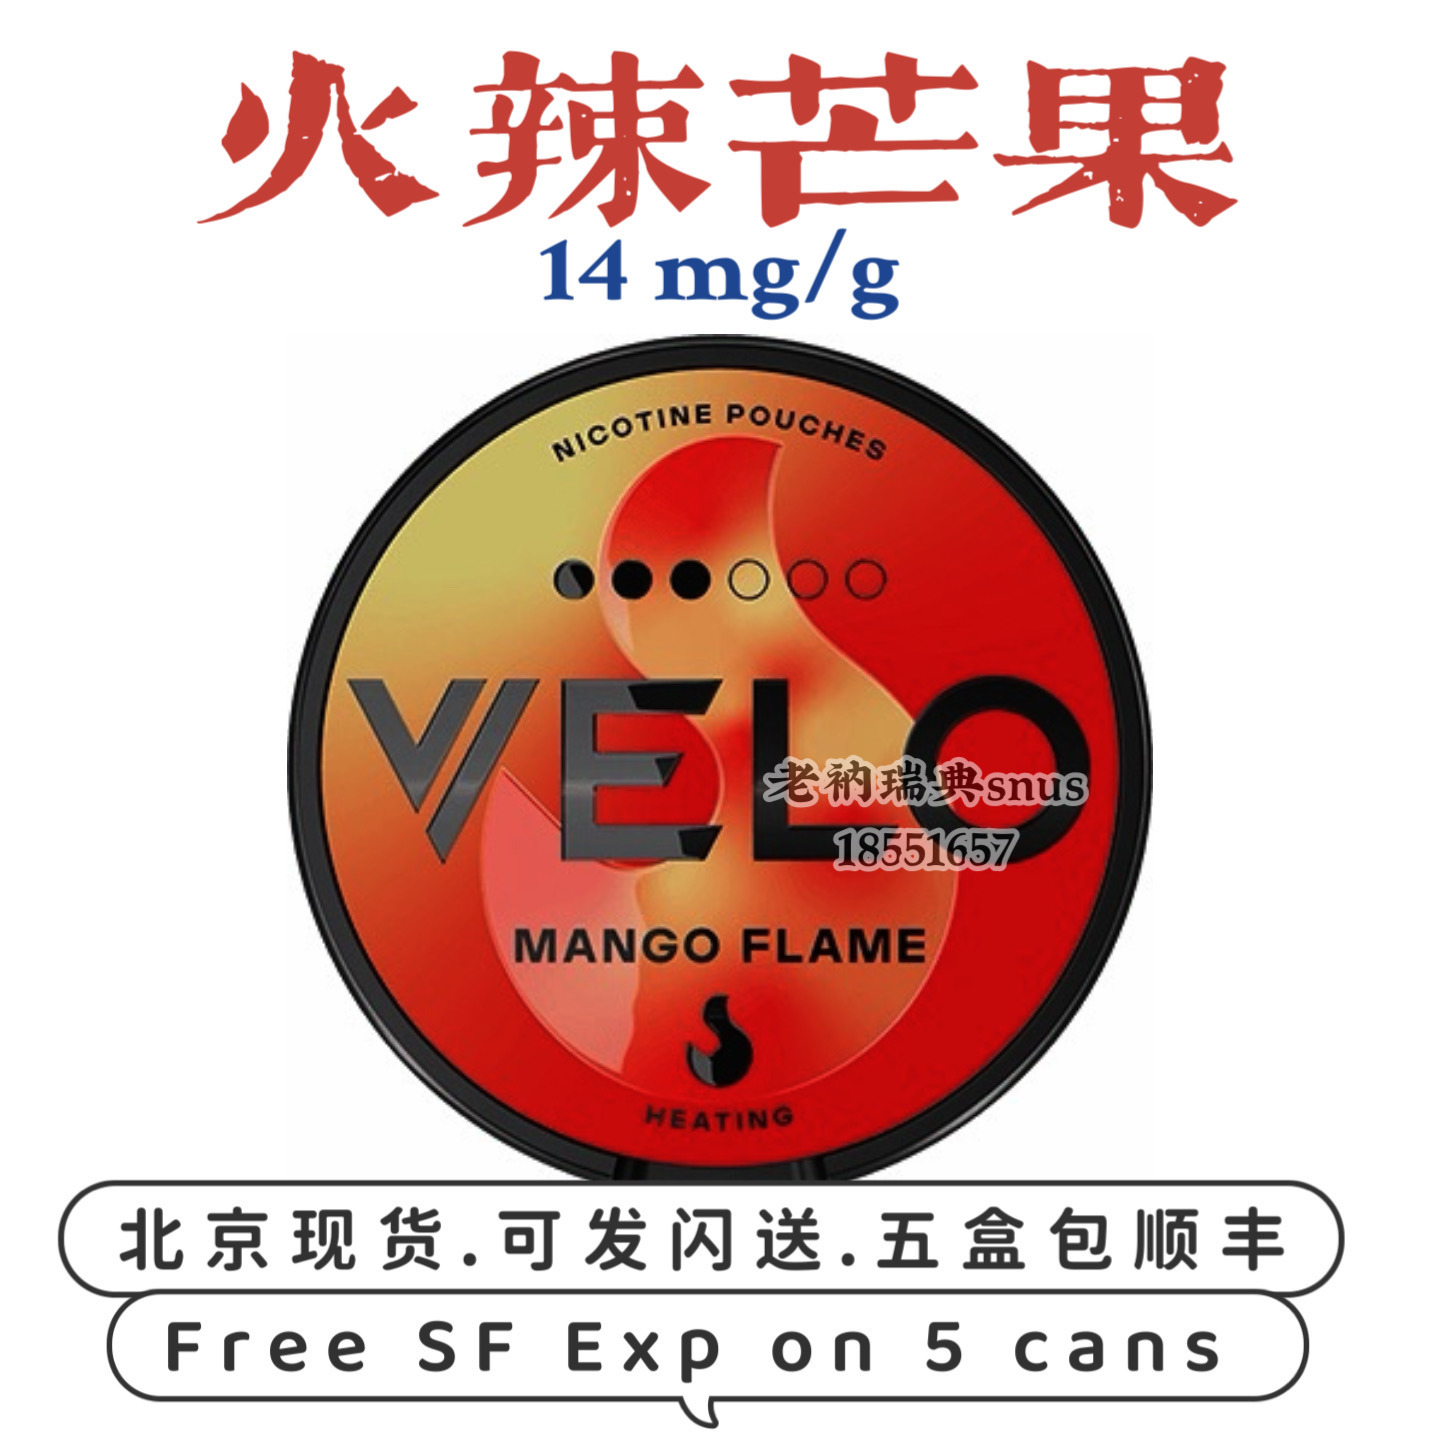 14火辣芒果(全白包) 瑞典snus VELO Mango Flame